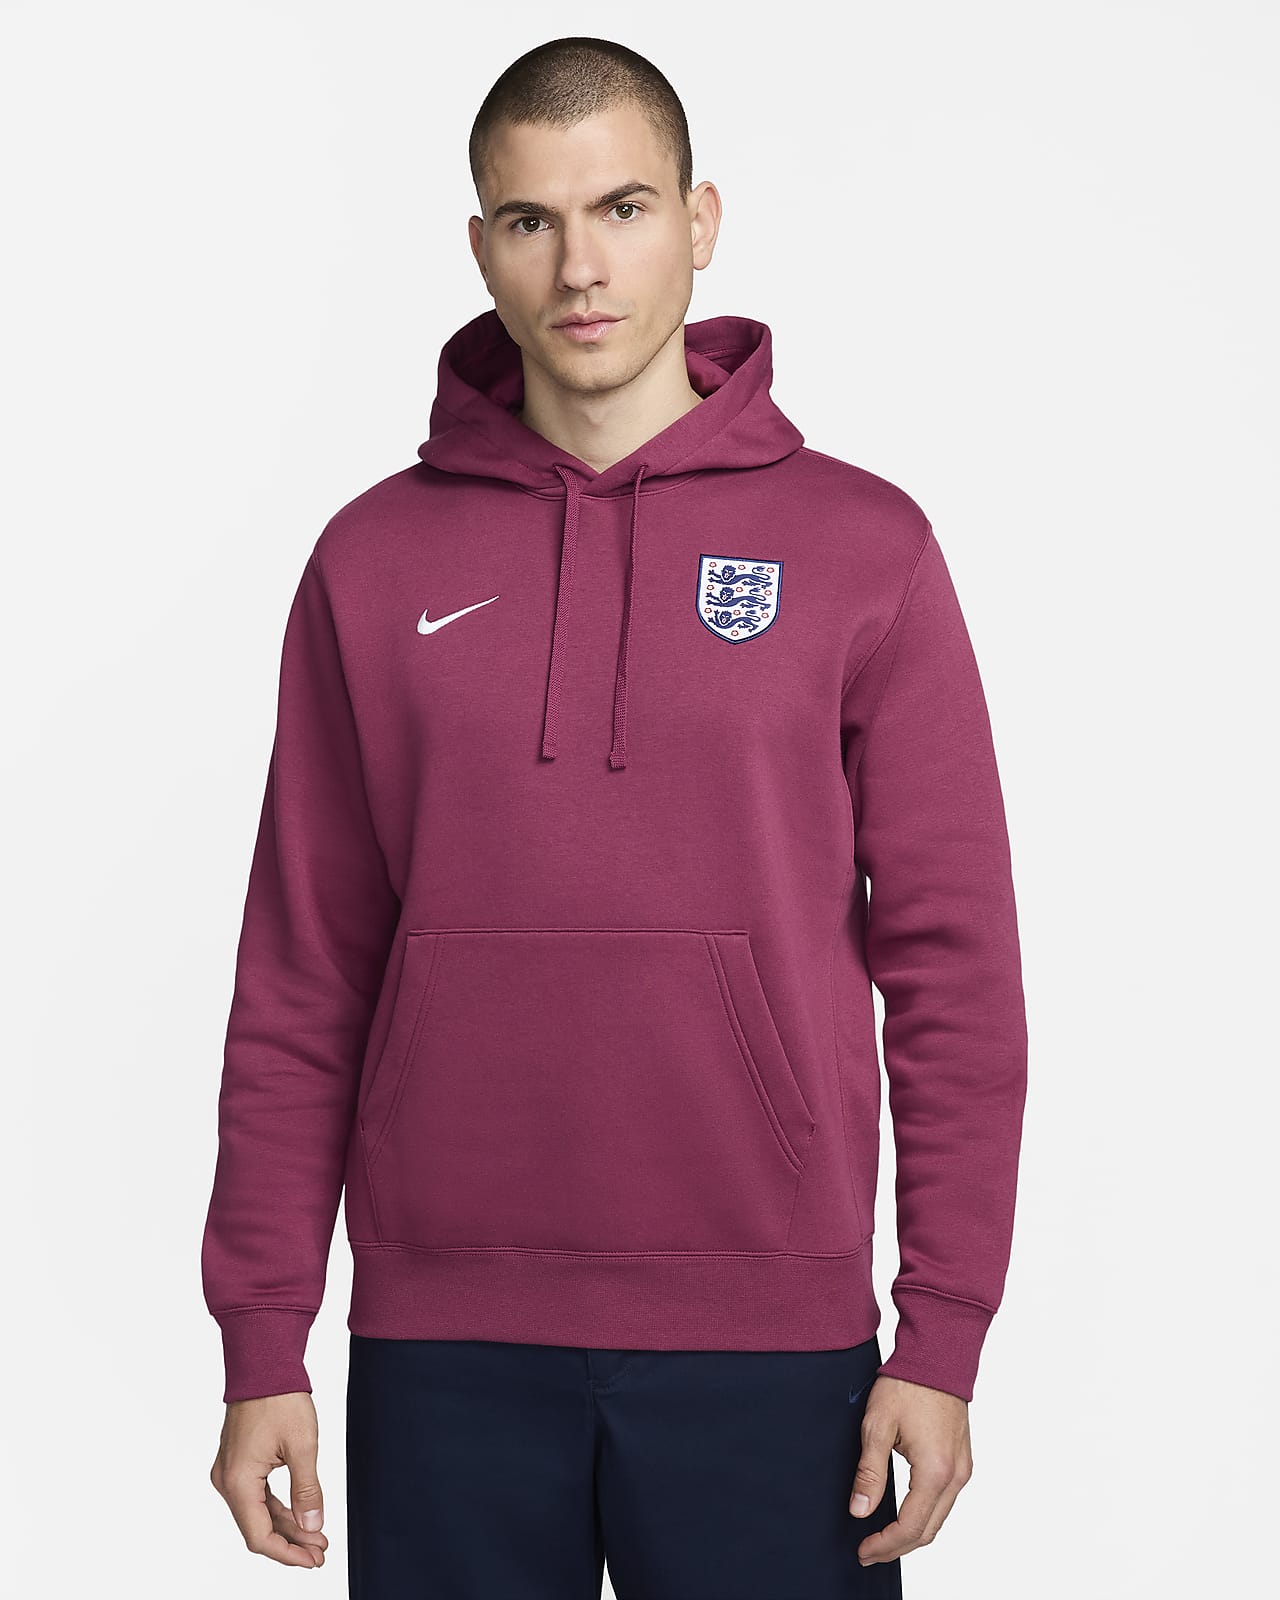 Felpa pullover da calcio con cappuccio Nike Inghilterra Club – Uomo